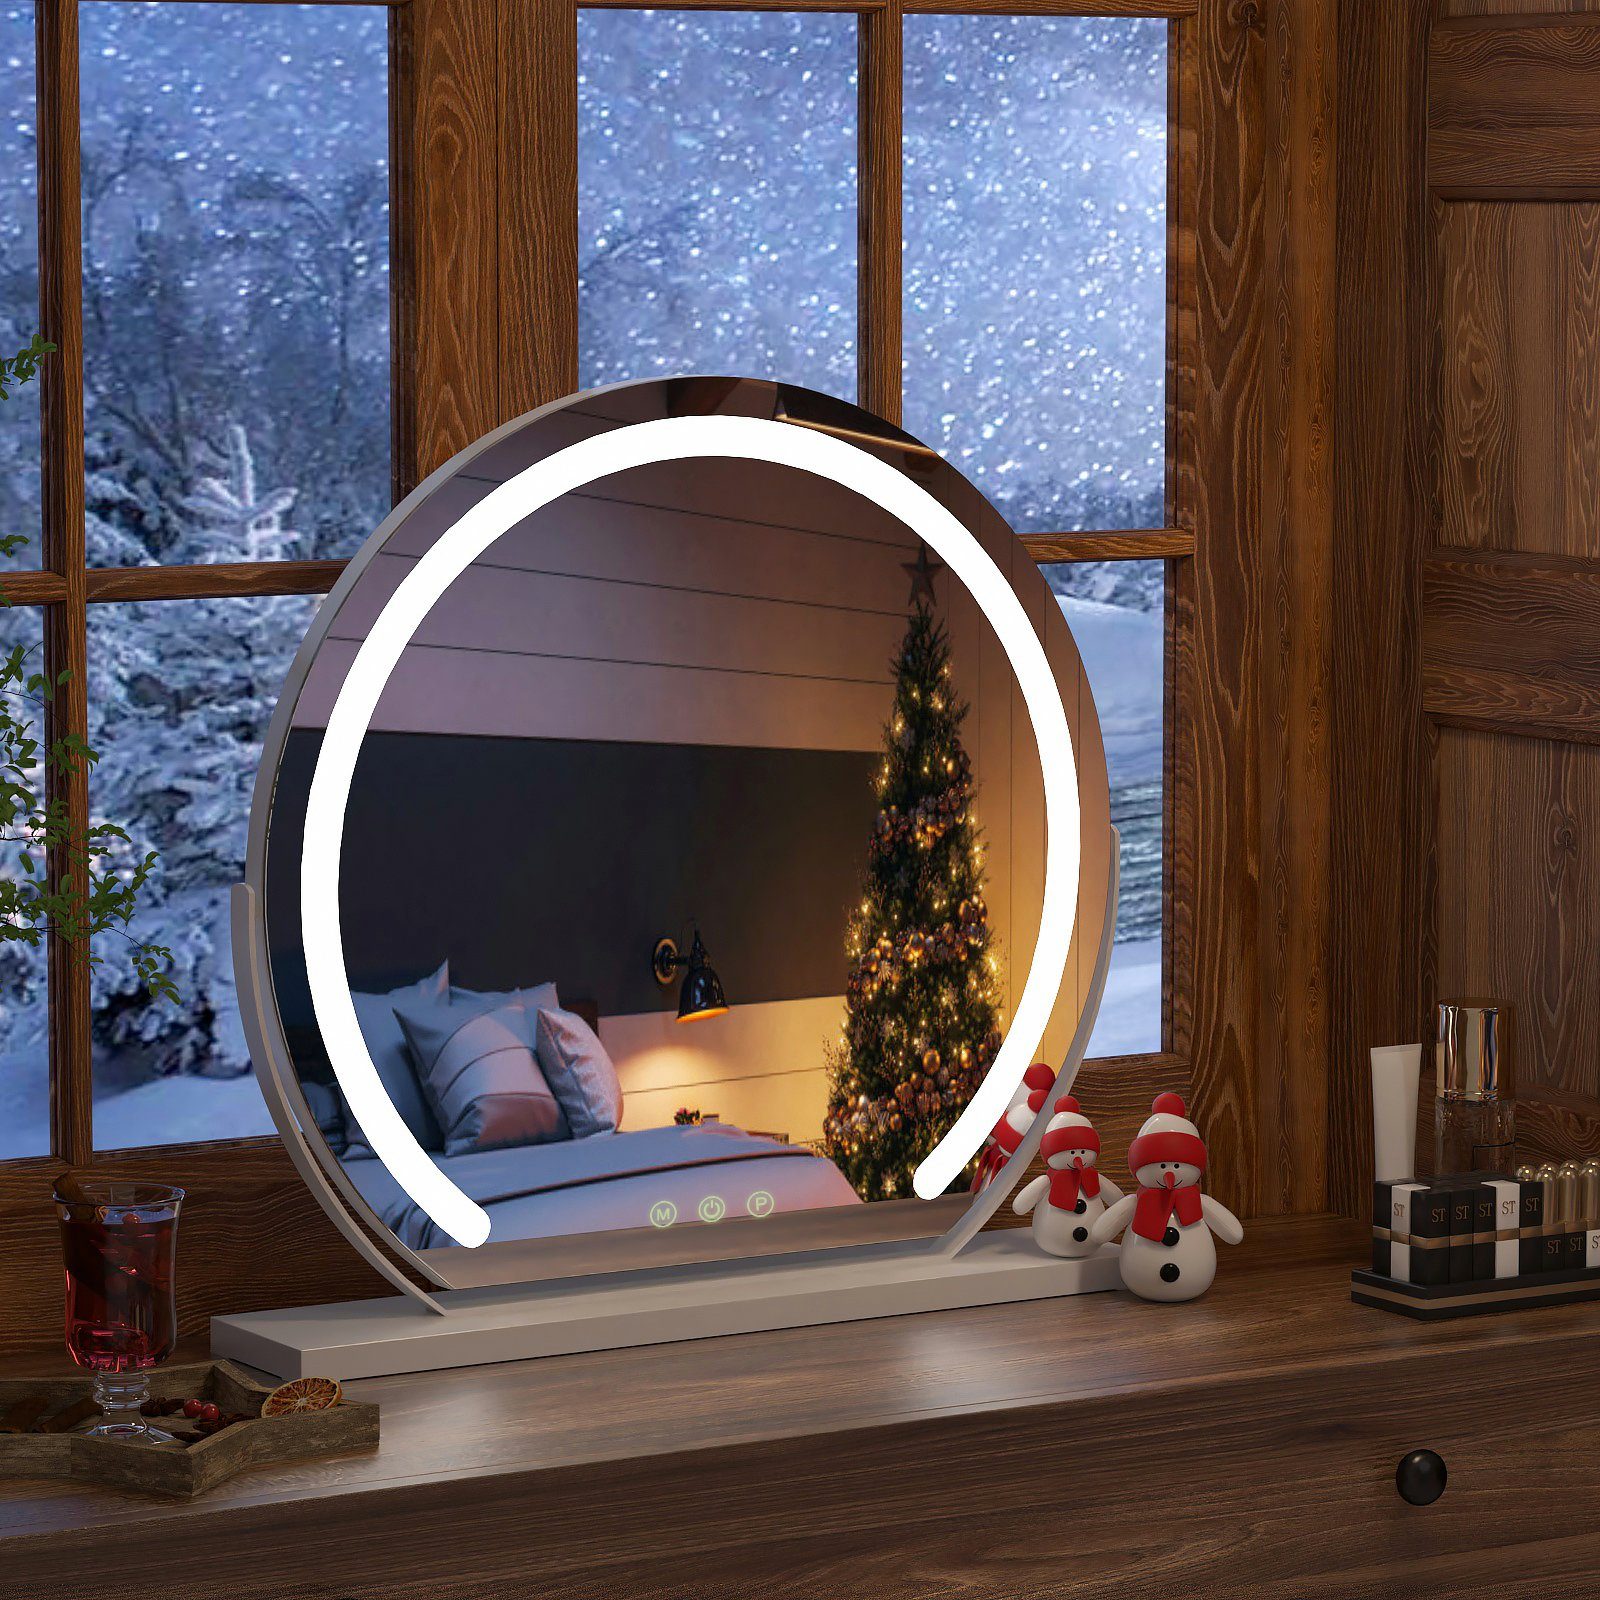 Φ Rund Dimmbar 3 LED mit Rahmen, 40cm Weißer Funktion Beleuchtung Kosmetikspiegel Memory S'AFIELINA Weihnachtsgeschenk, Lichtfarben Schminkspiegel